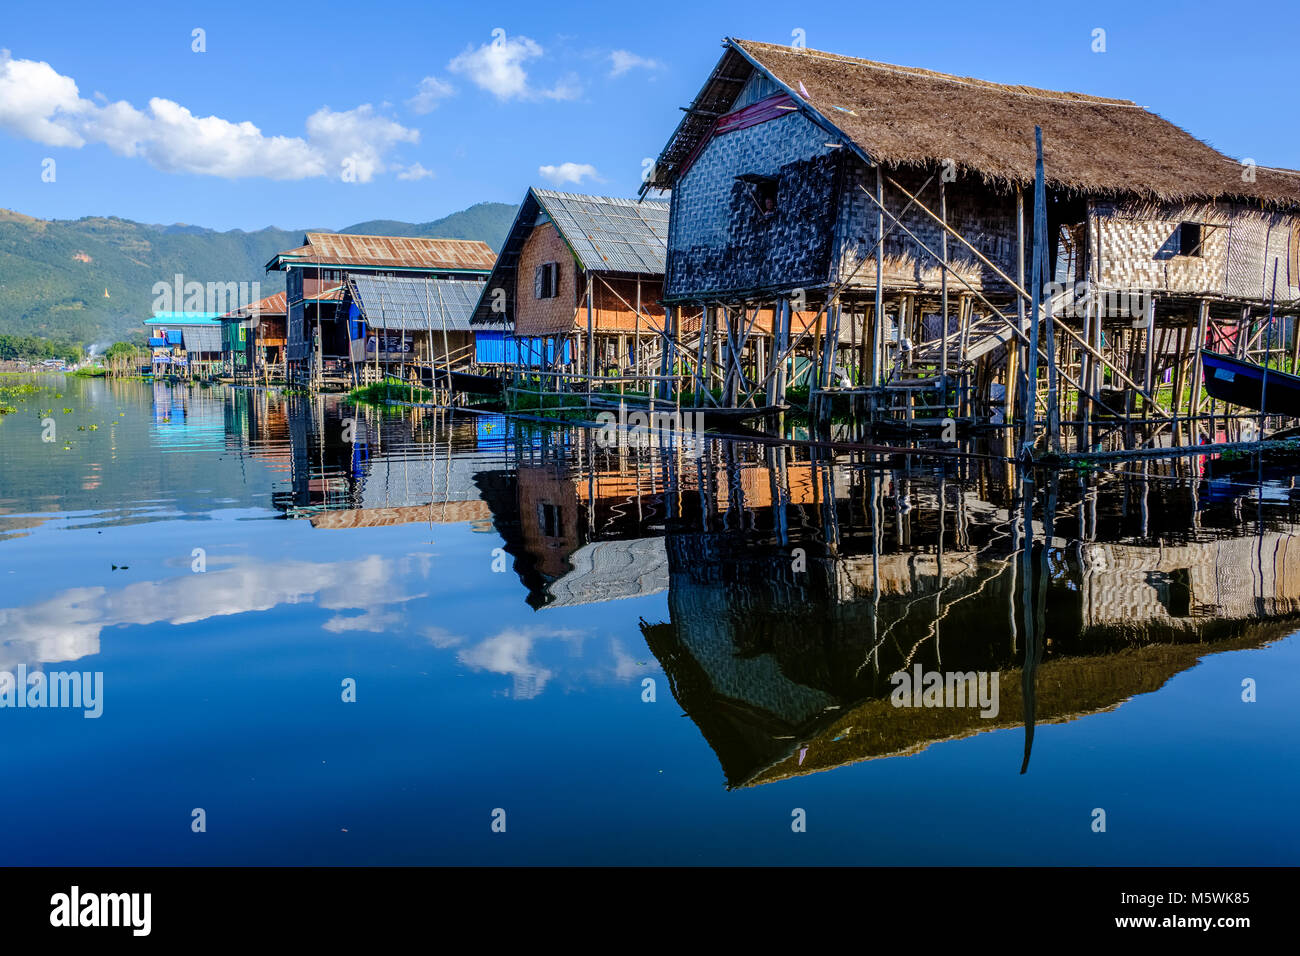 Les maisons de pêcheurs sont construites sur pilotis entre la piscine jardins dans le village de Haspres Thauk sur le lac Inle Banque D'Images